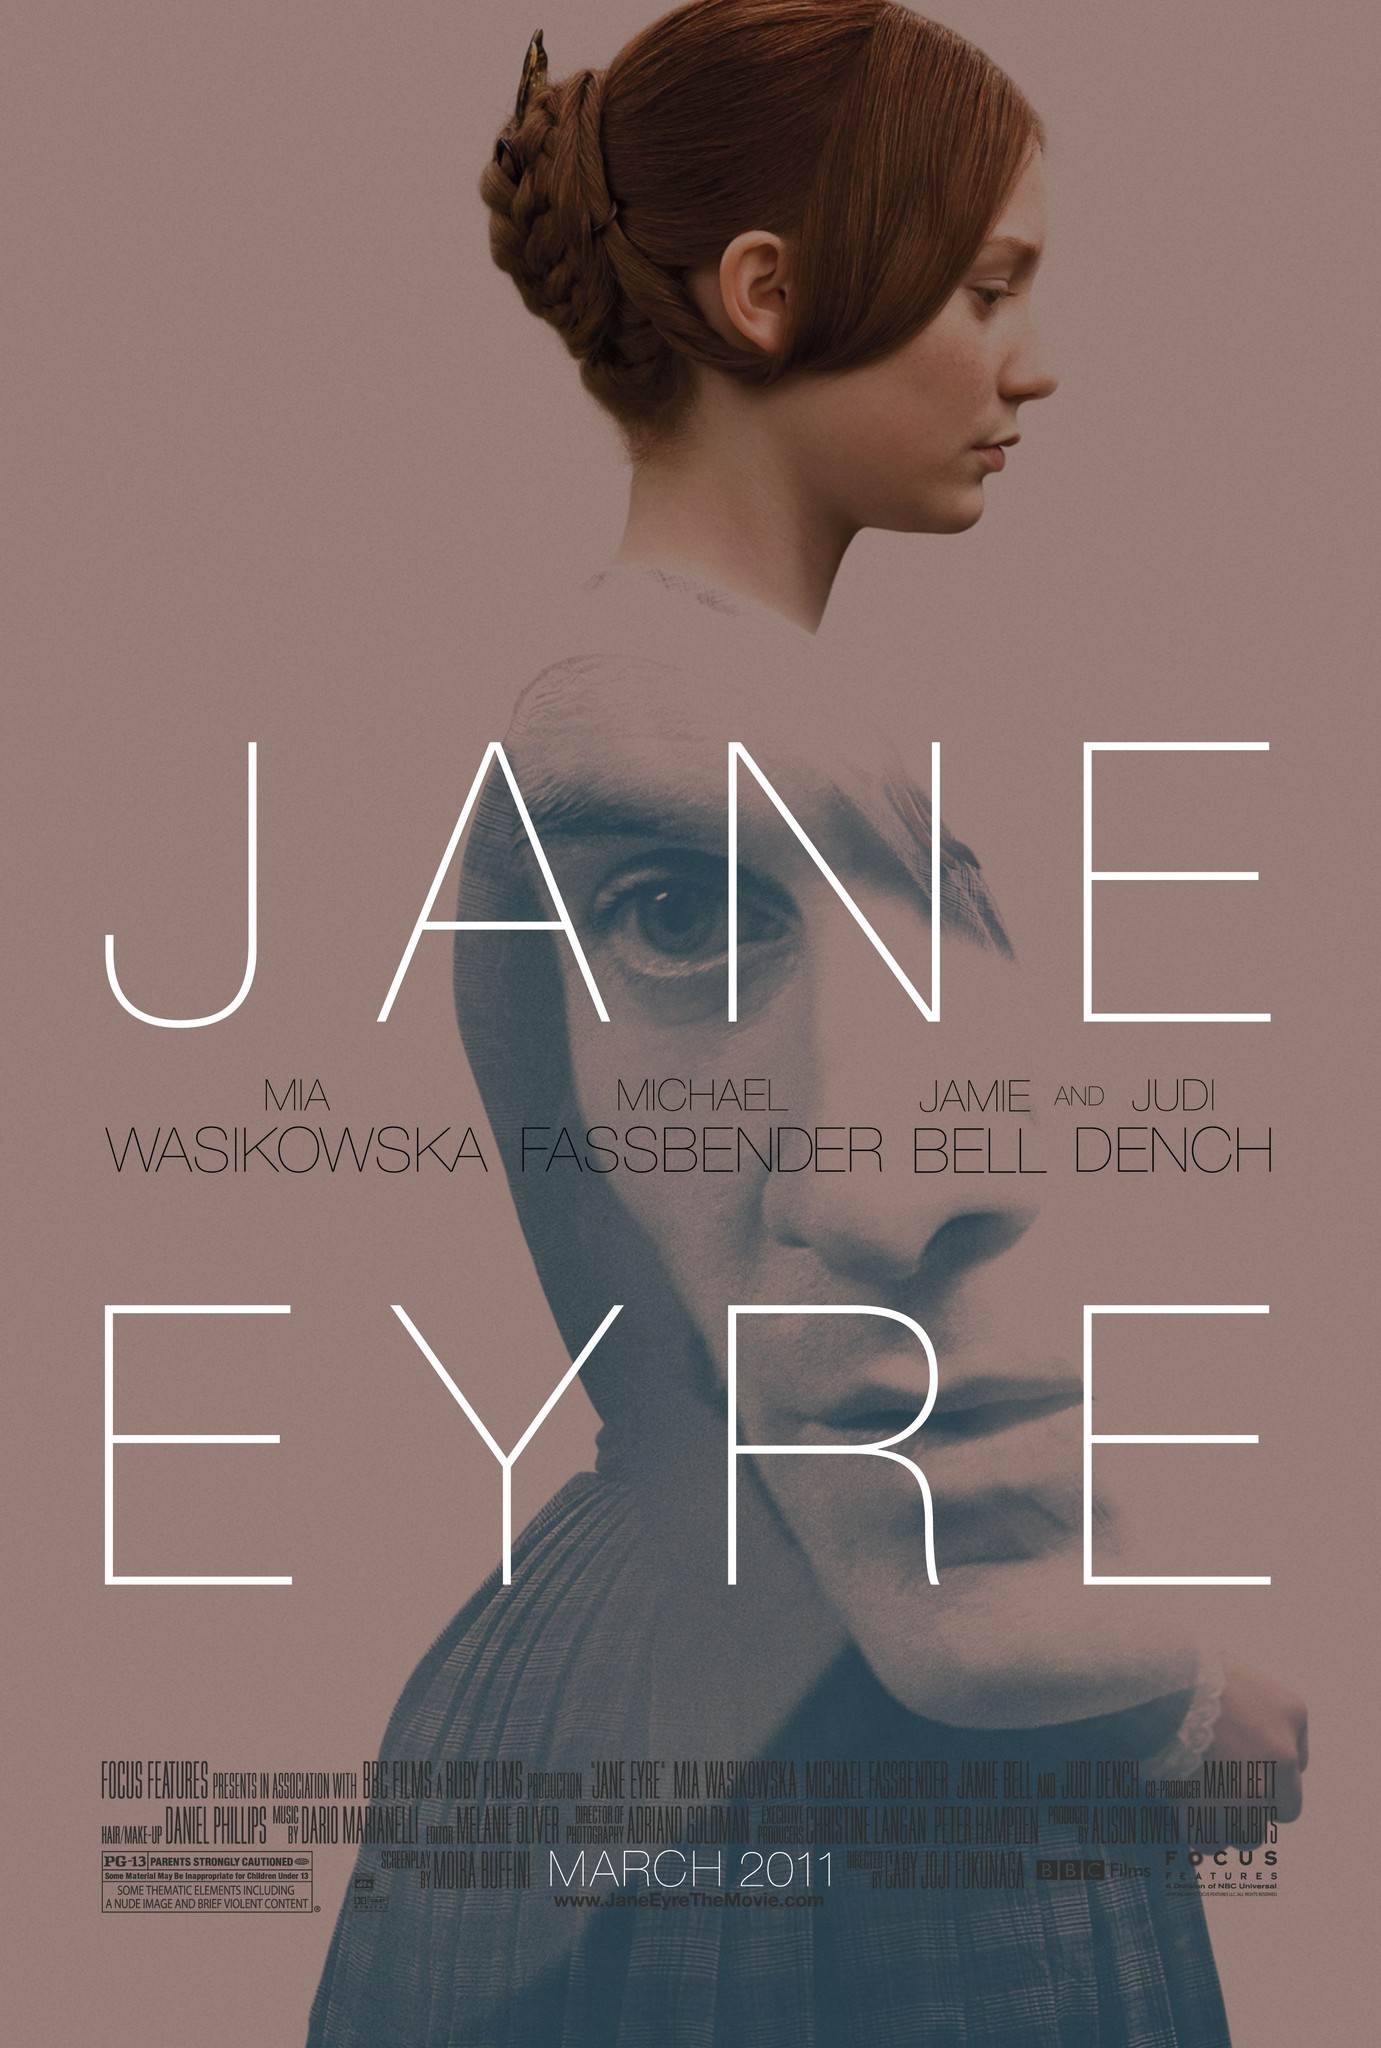 Chuyện tình nàng Jane Eyre 2011